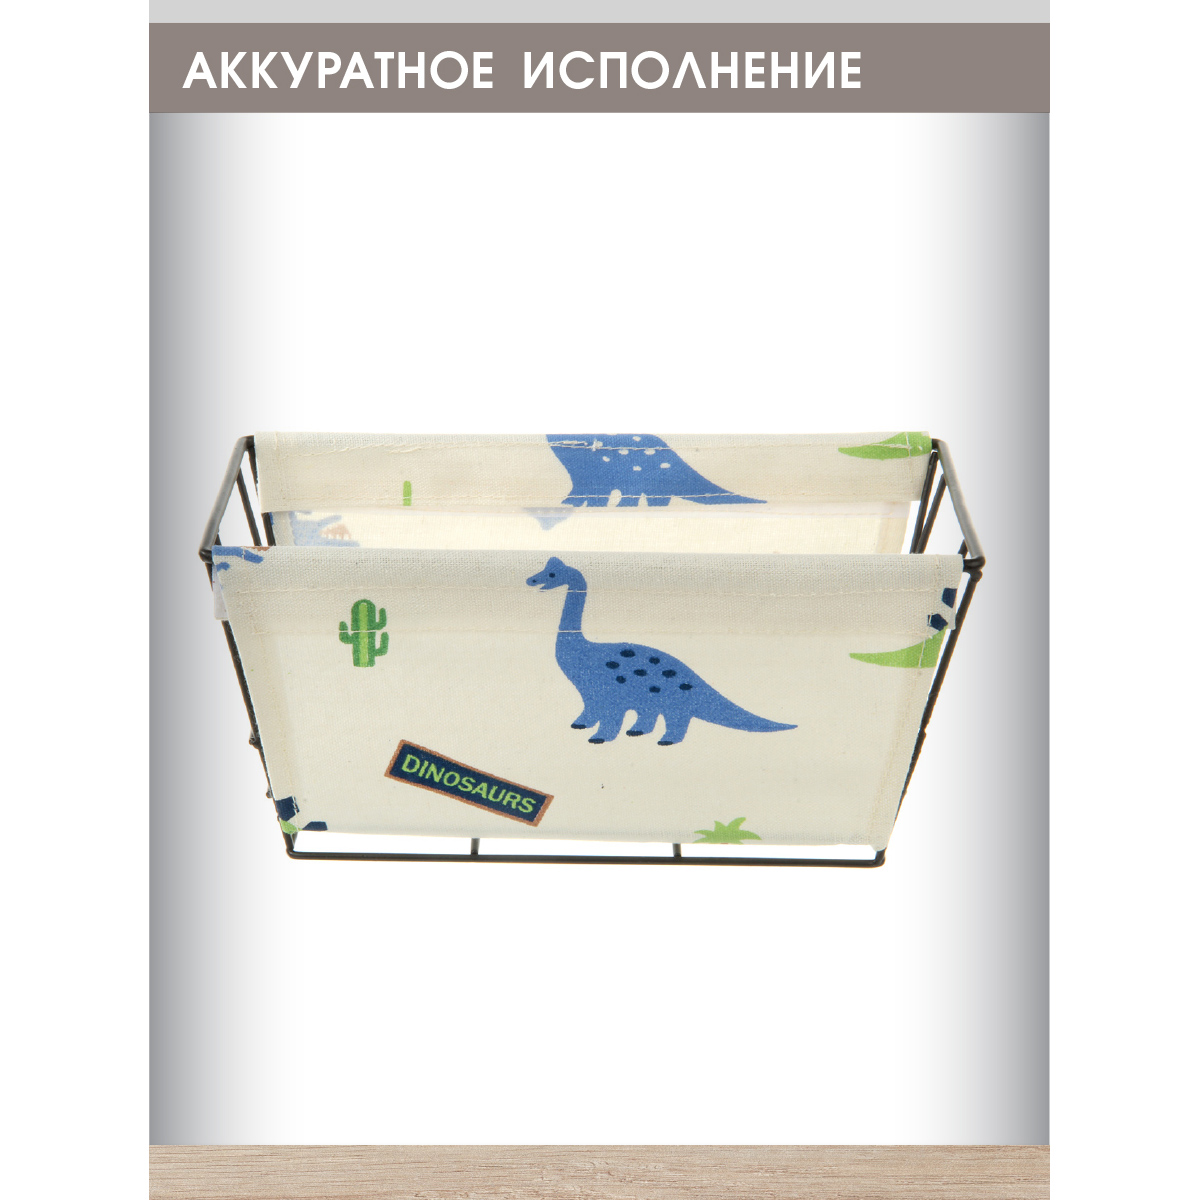 Корзина для игрушек Amico органайзер для хранения Динозаврики - фото 1